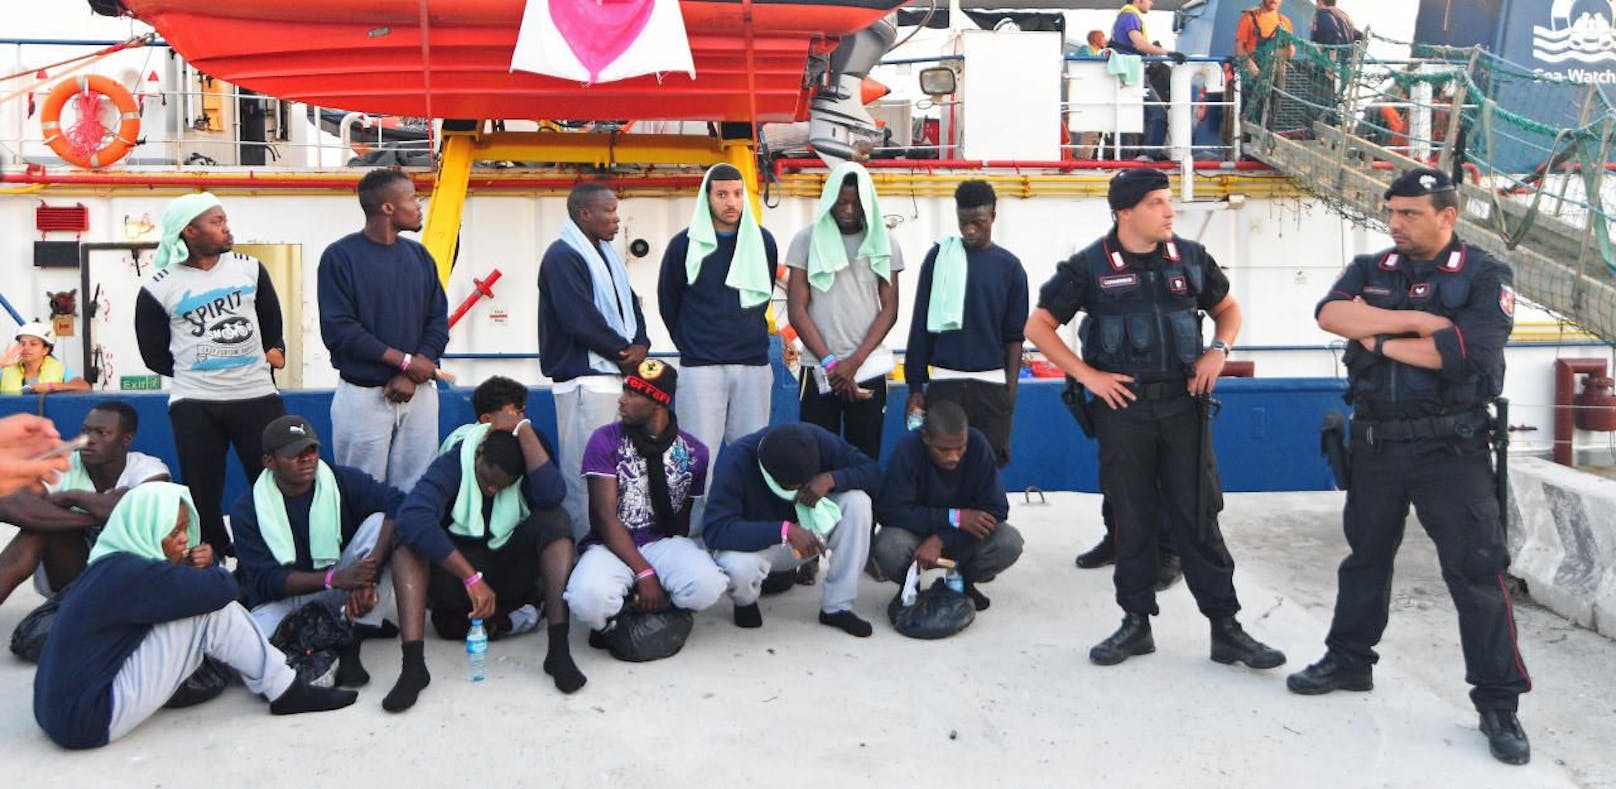 Polizisten nehmen die Migranten der Sea Watch 3 entgegen.